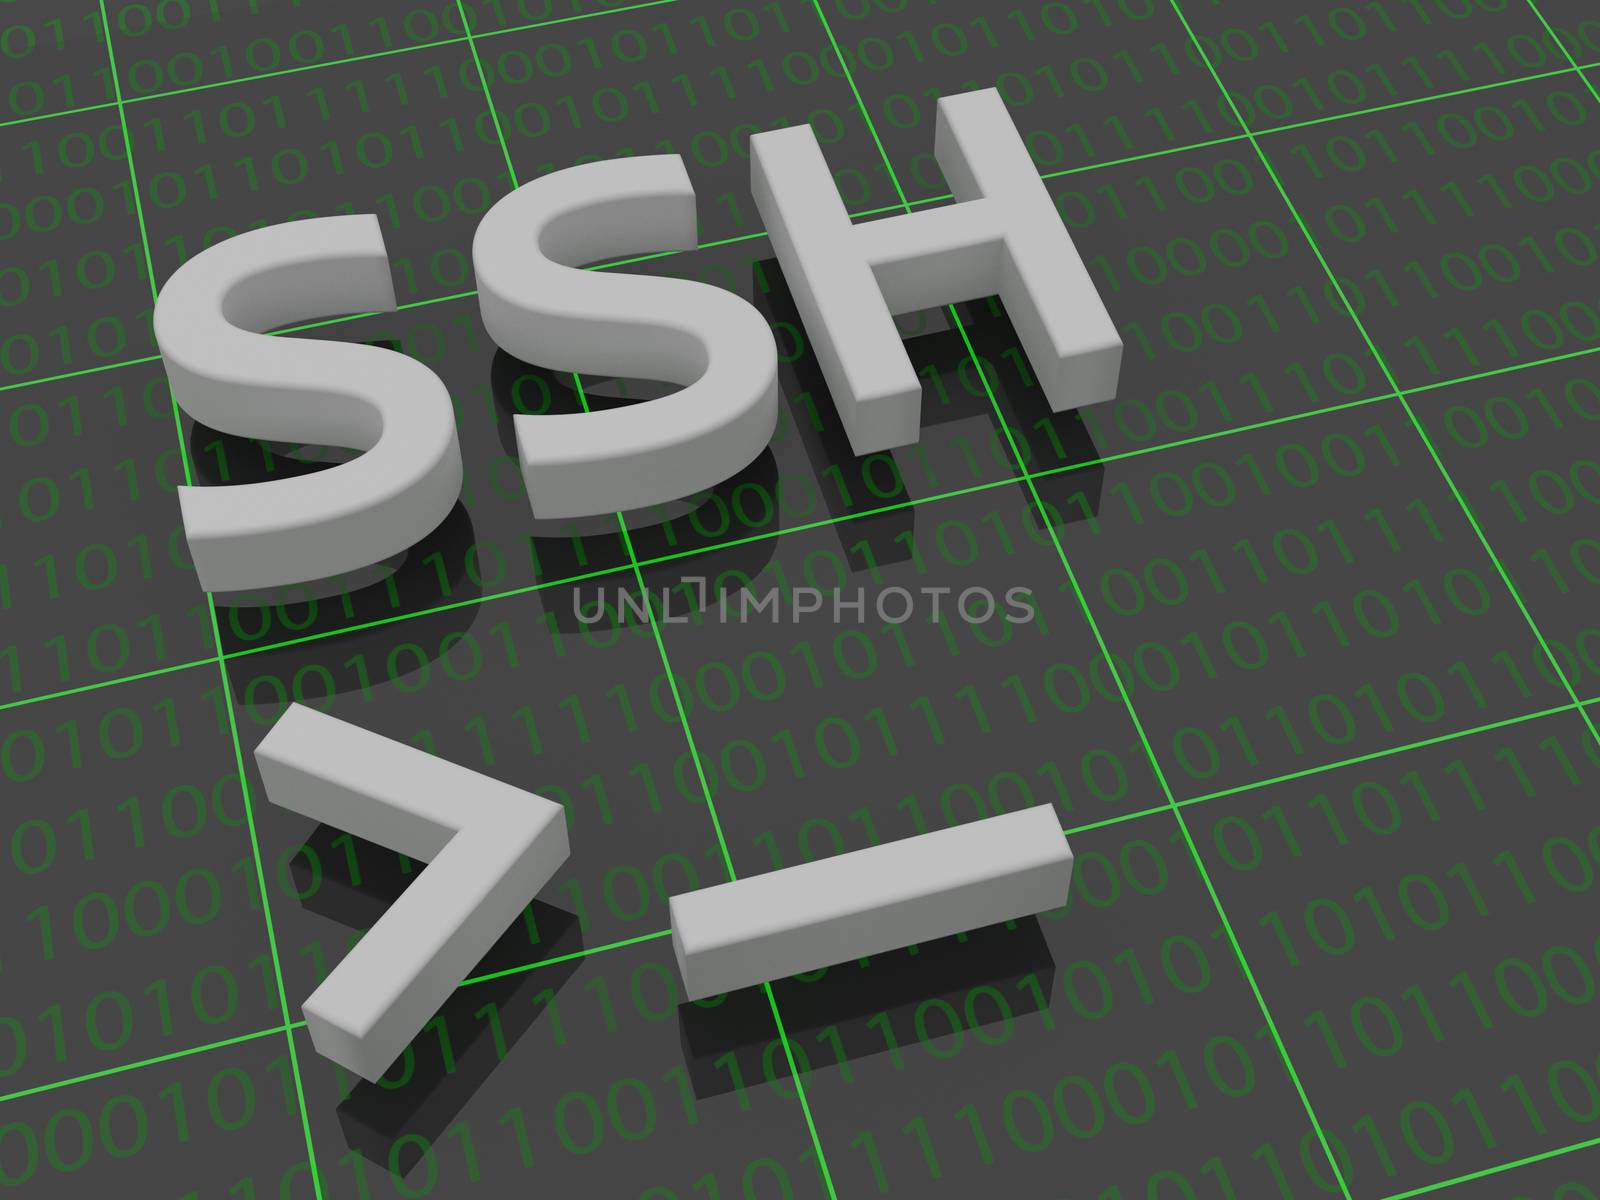 SSH by tonsnoei